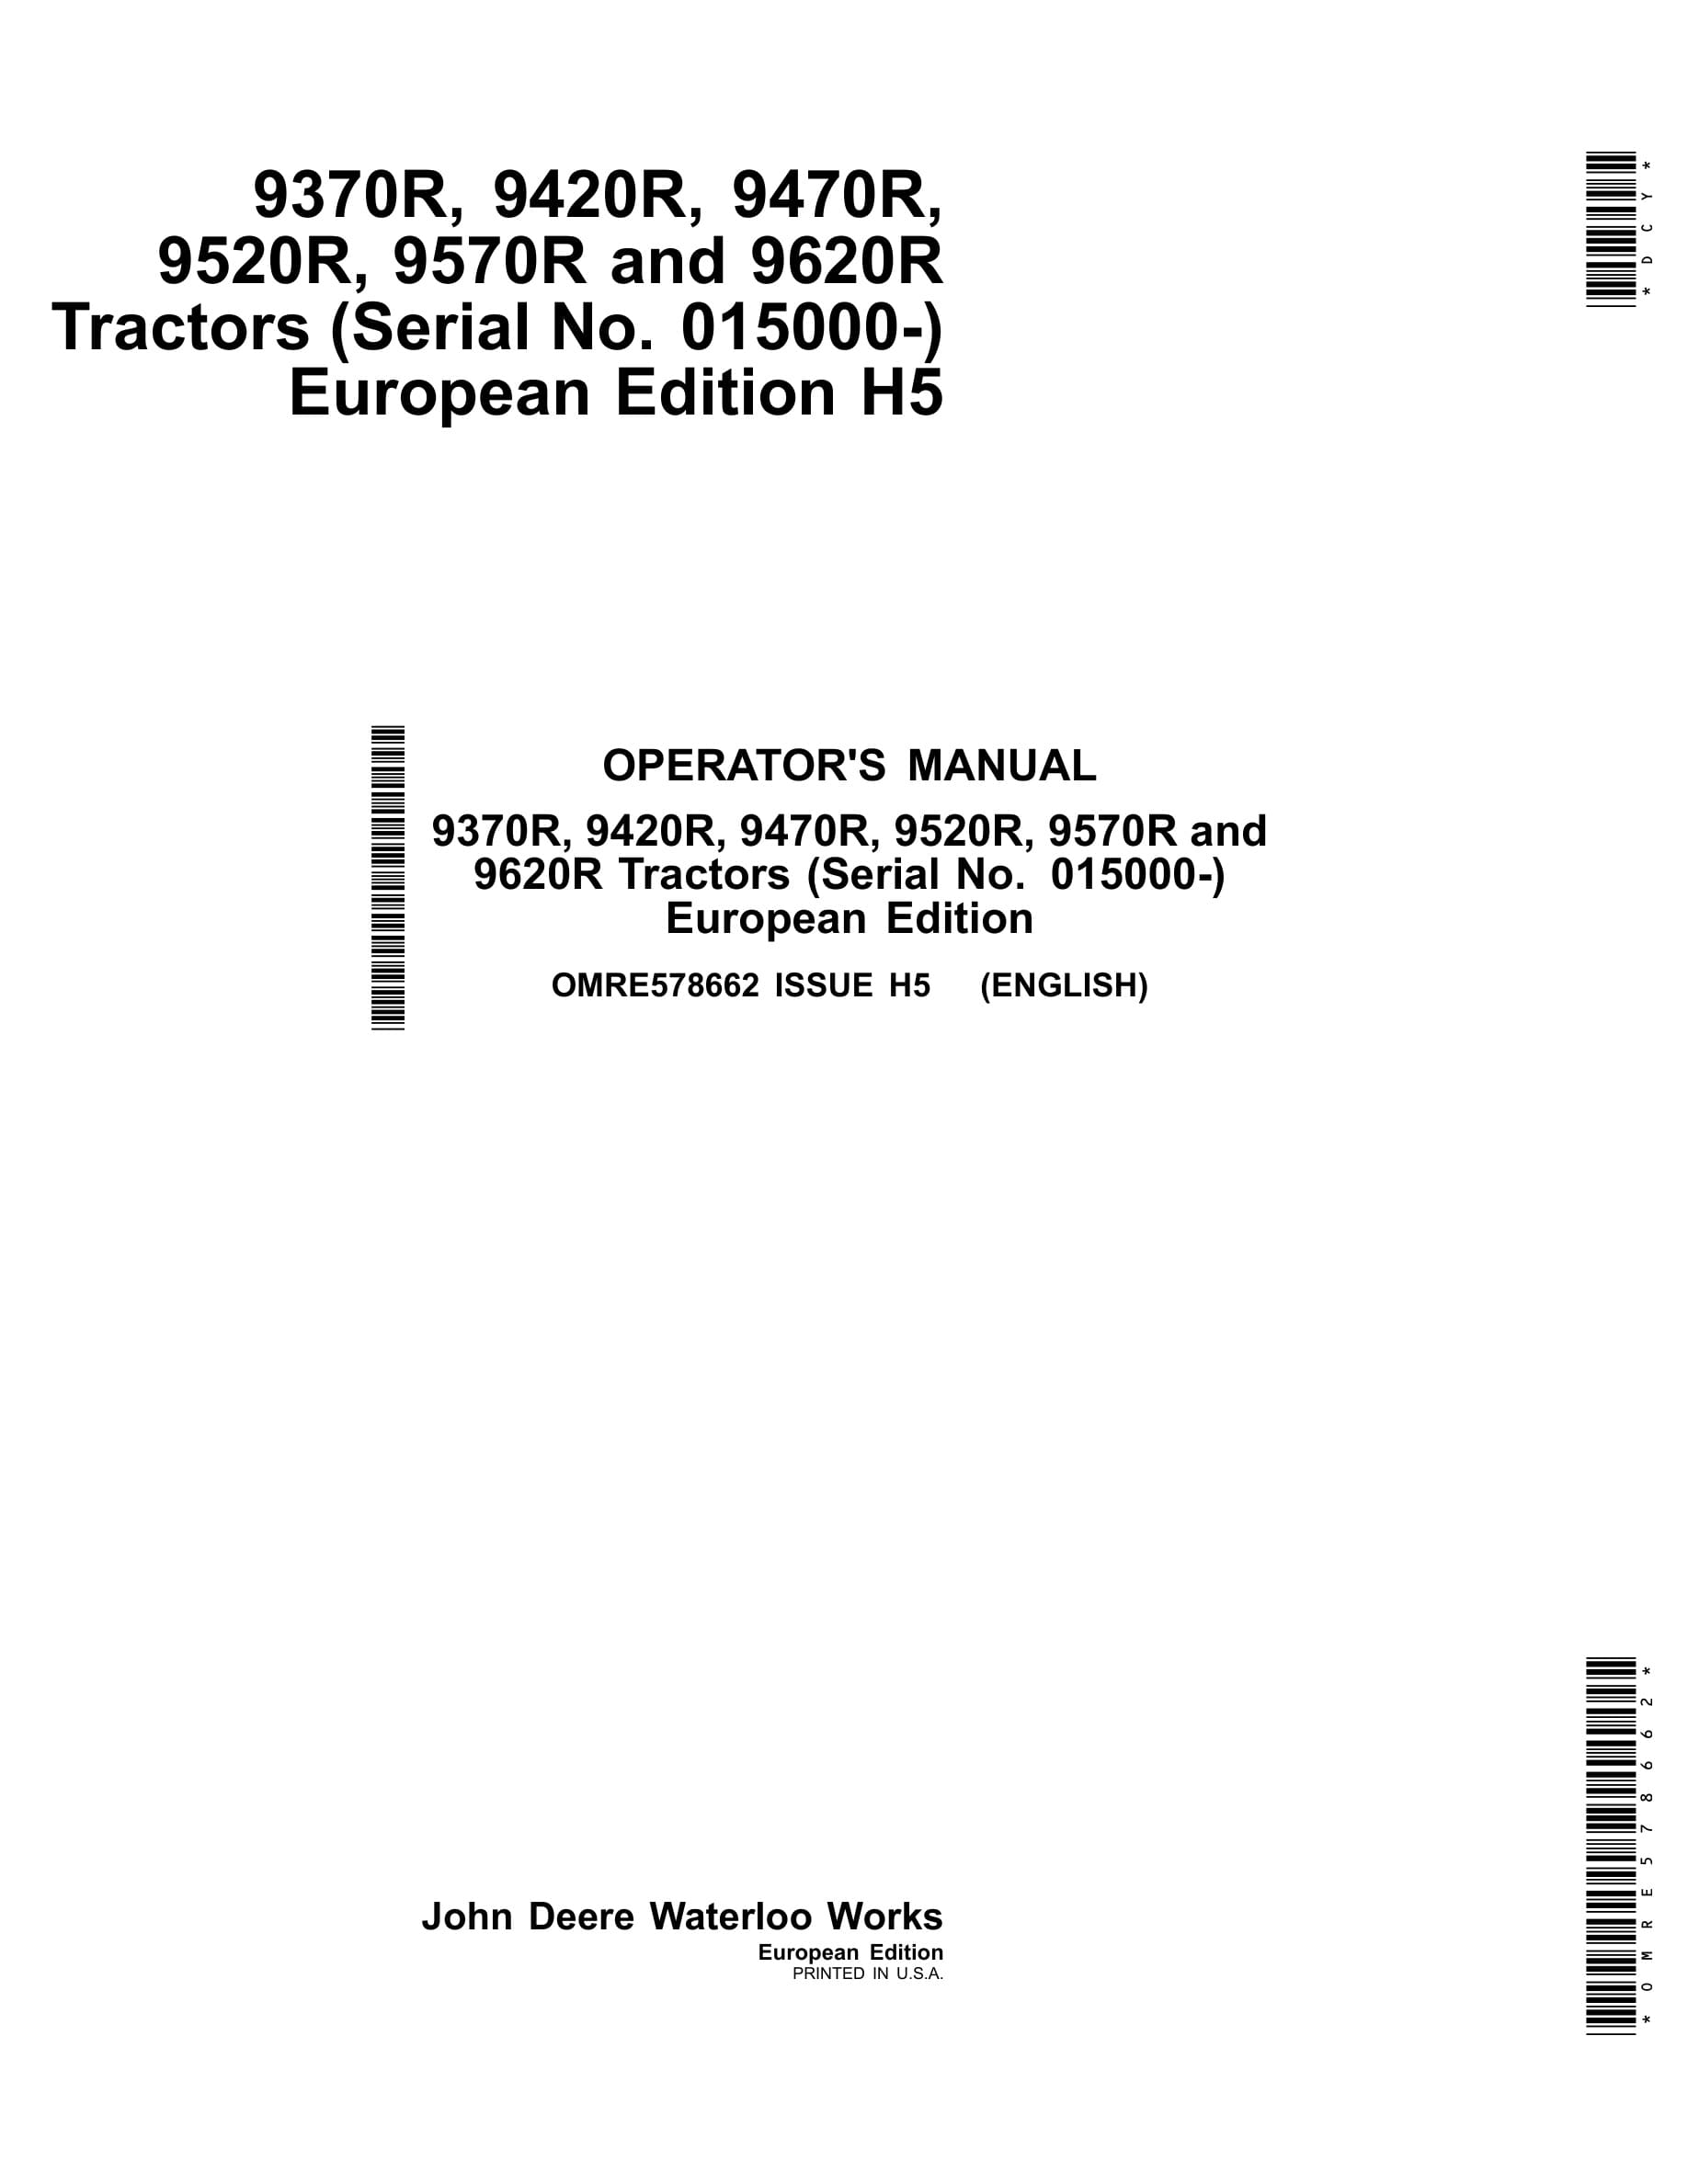 John Deere 9370r, 9420r, 9470r, 9520r, 9570r And 9620r Tractors Operator Manuals OMRE578662-1